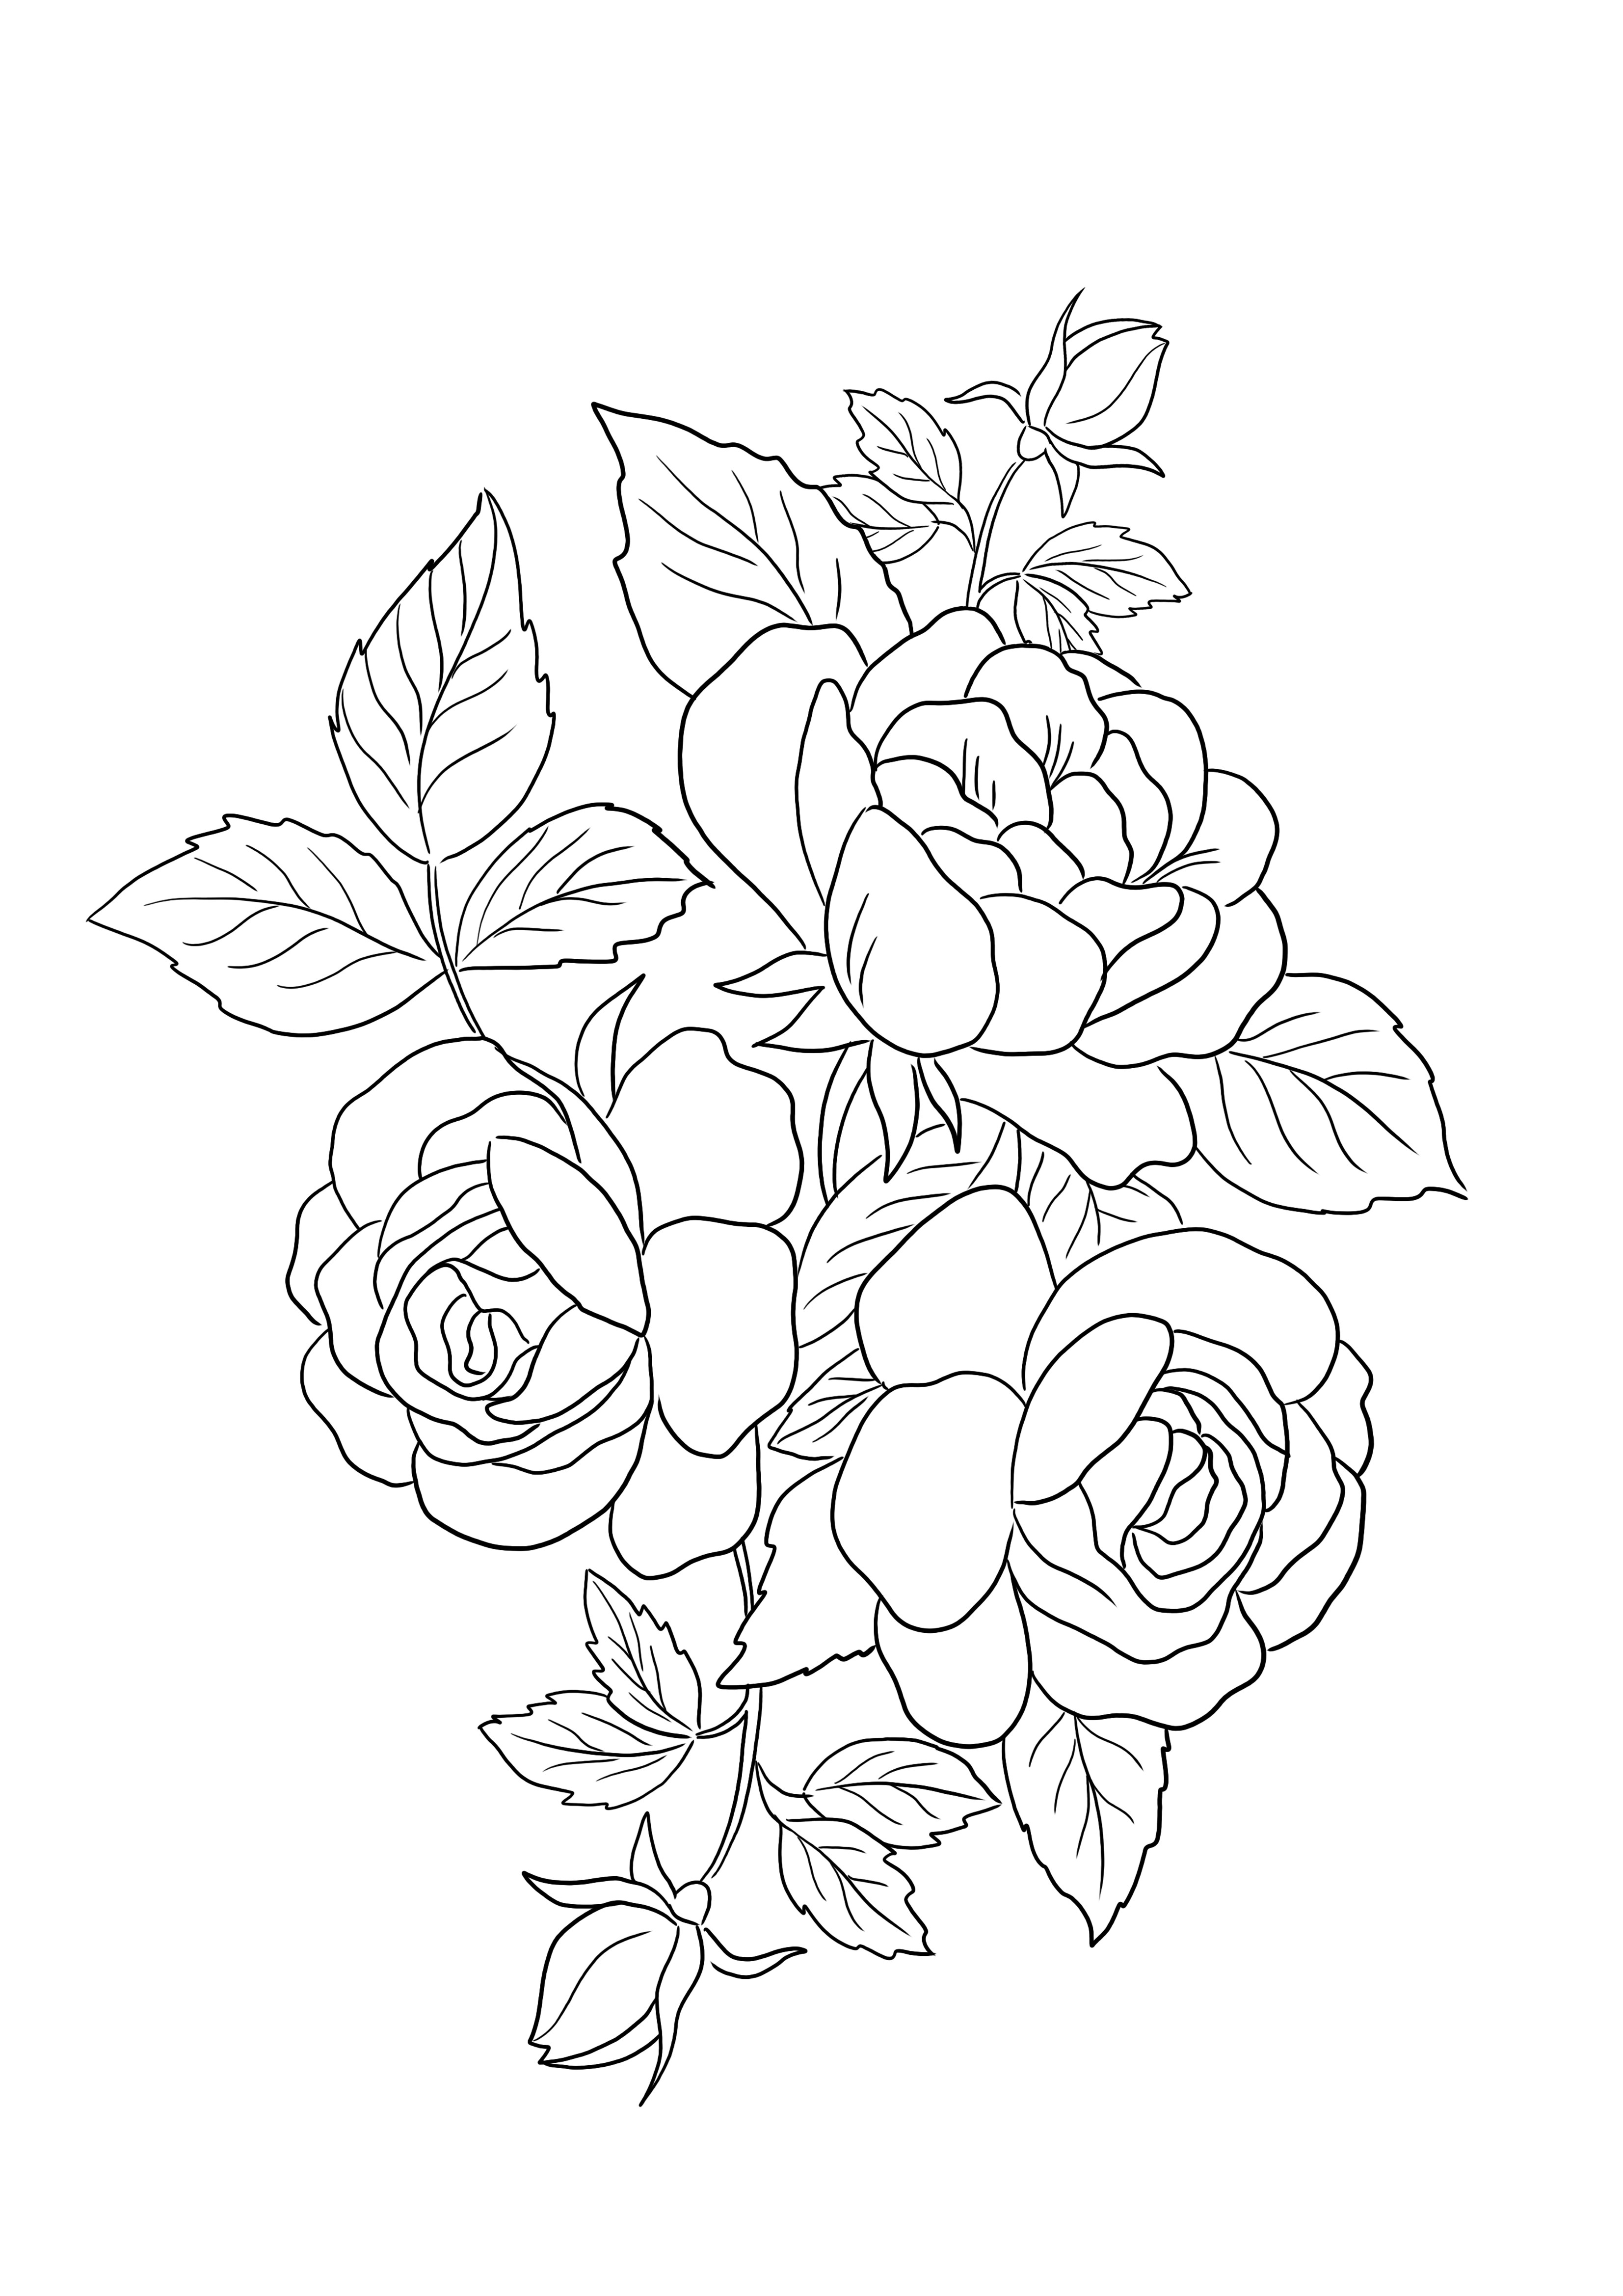 Imagem para colorir gratuita de Rosas Flores para imprimir ou baixar para crianças